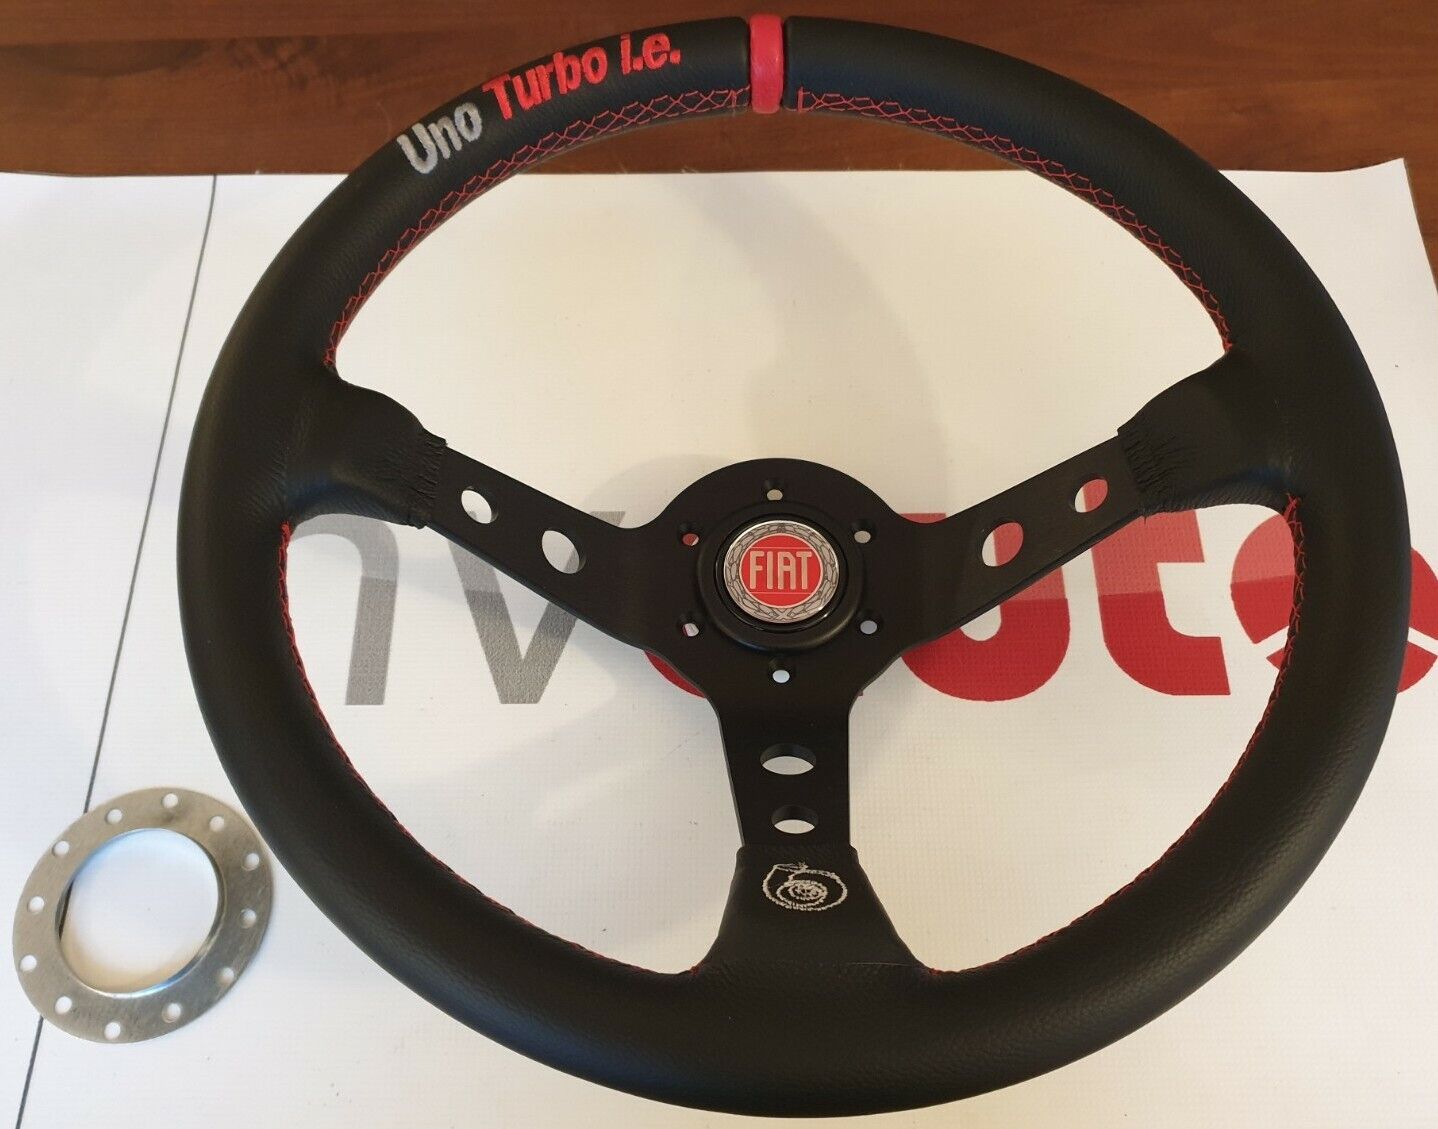 Sports steering wheel steering wheel leather steering wheel Fiat Uno Turbo MK1 & Racing 350 mm/90 mm